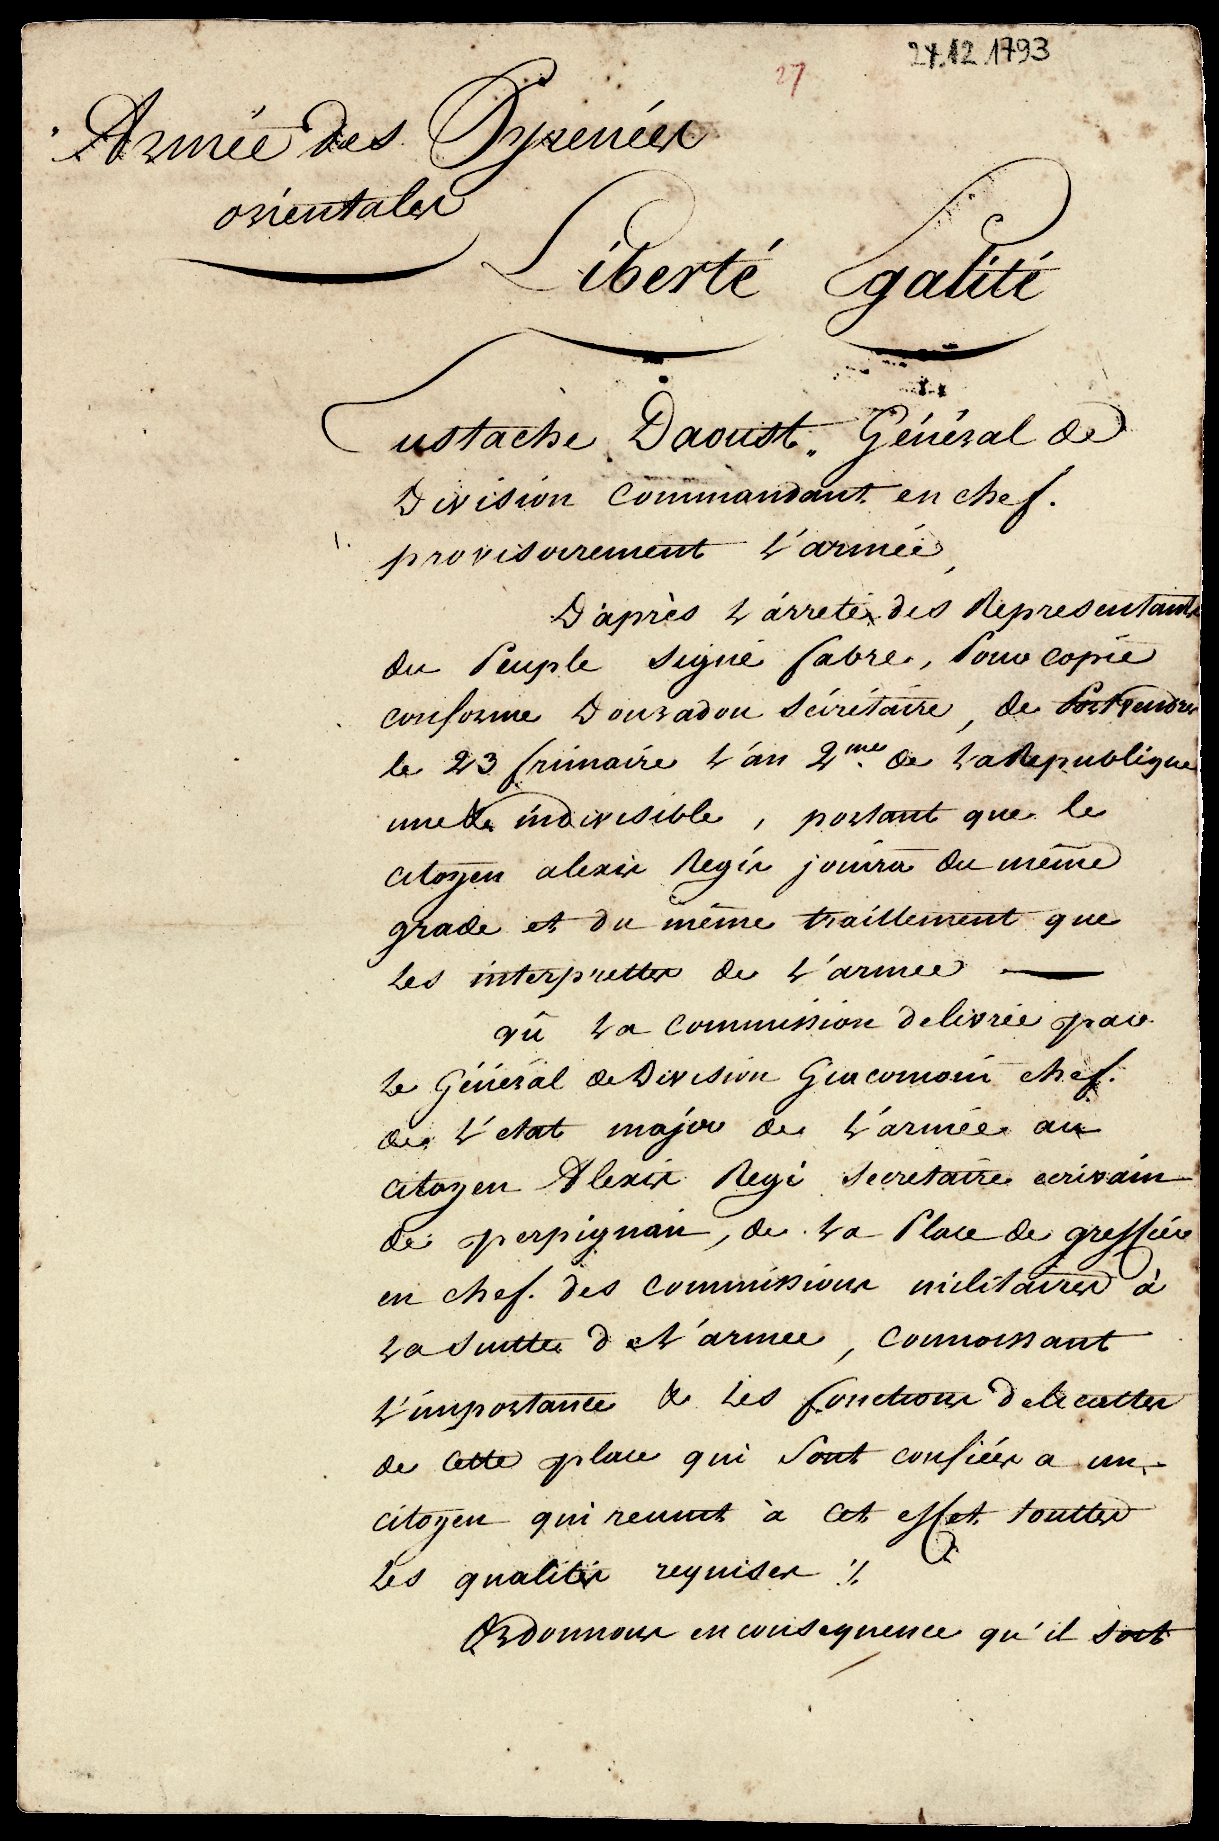 Referenz: aoust-eustache-charles-joseph-d-general-marquis-guillotine-le-2-juillet-1794